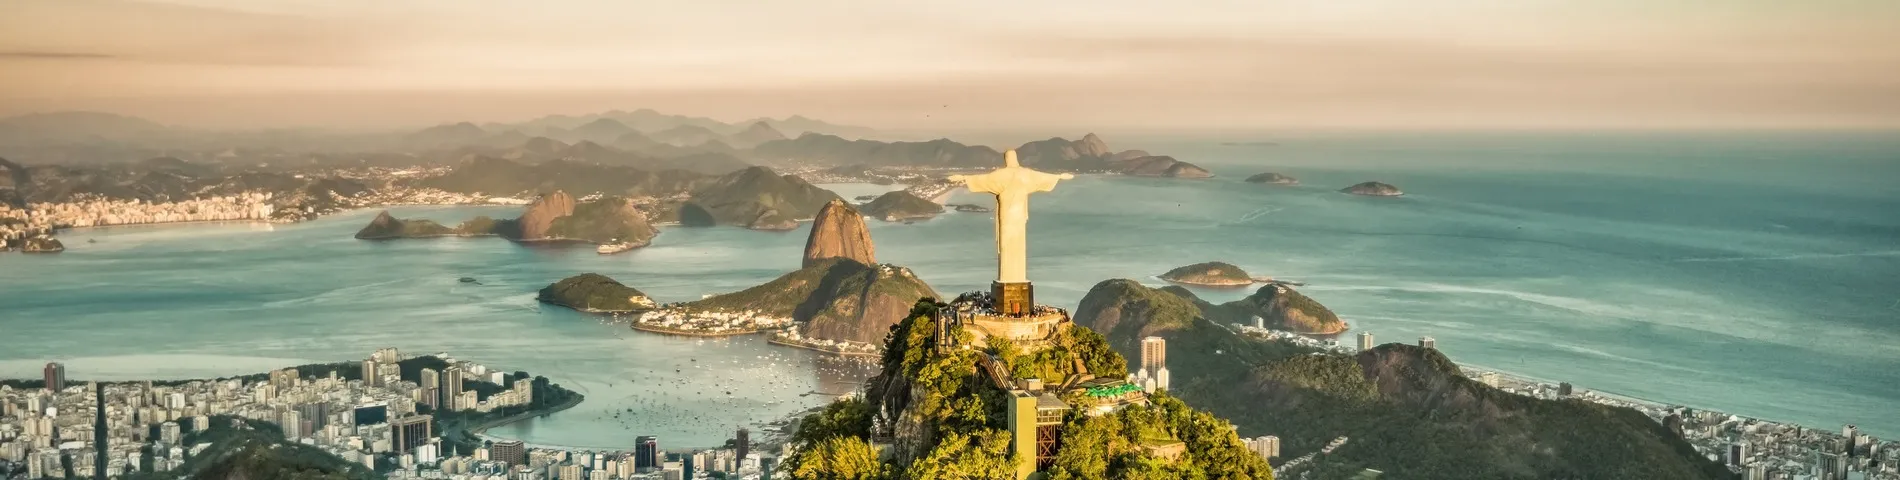 ريو دي جانيرو - الدورة العادية*